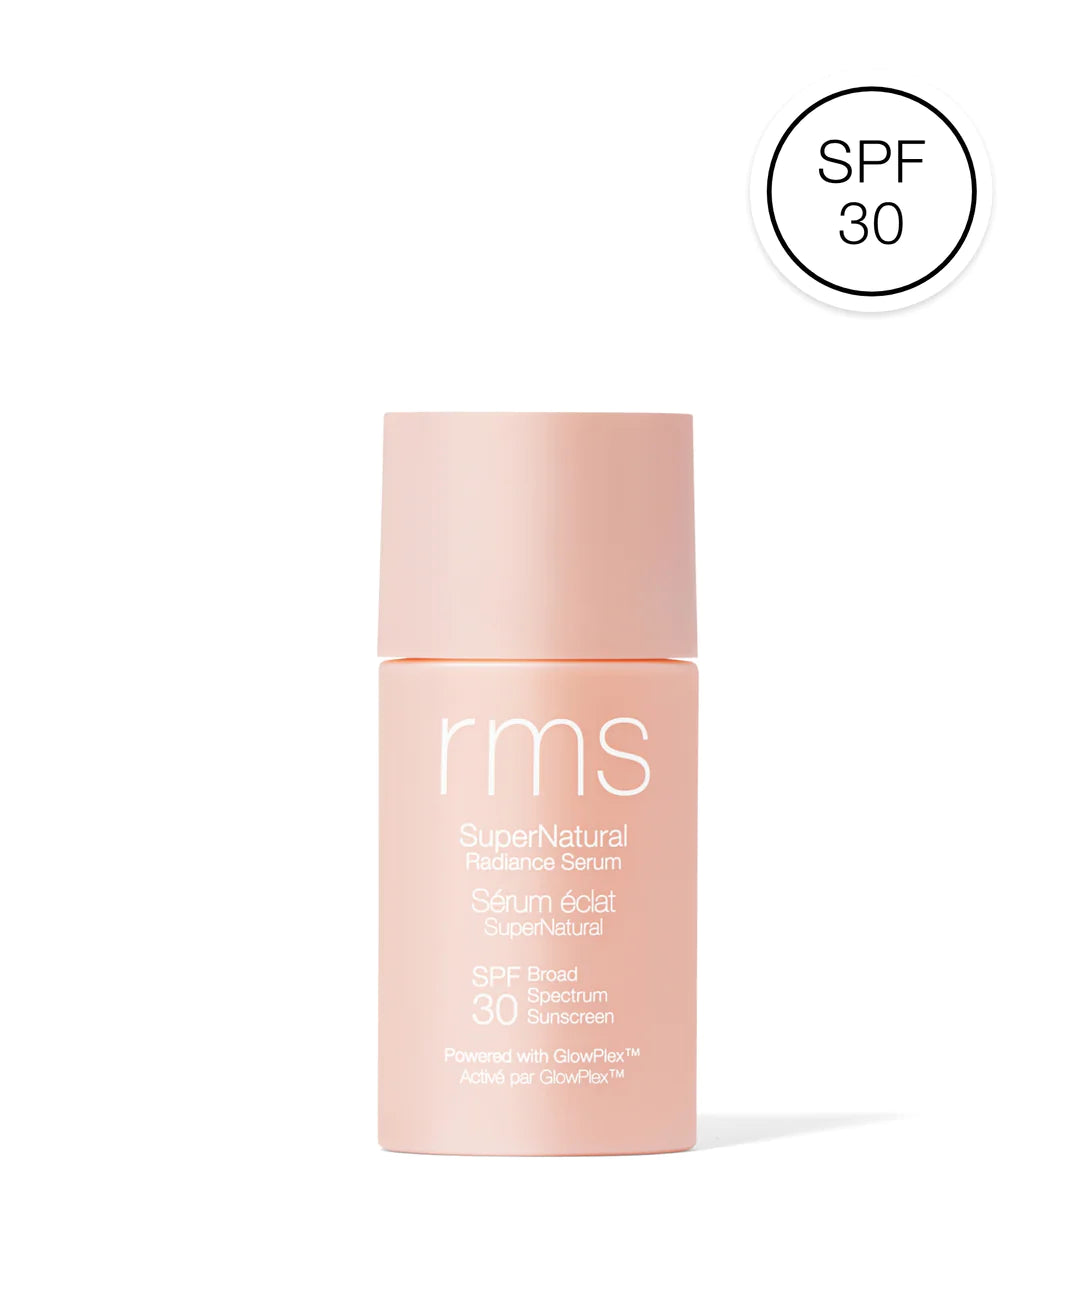 rms beauty SuperNatural Radiance Serum SPF 30 Sunscreen